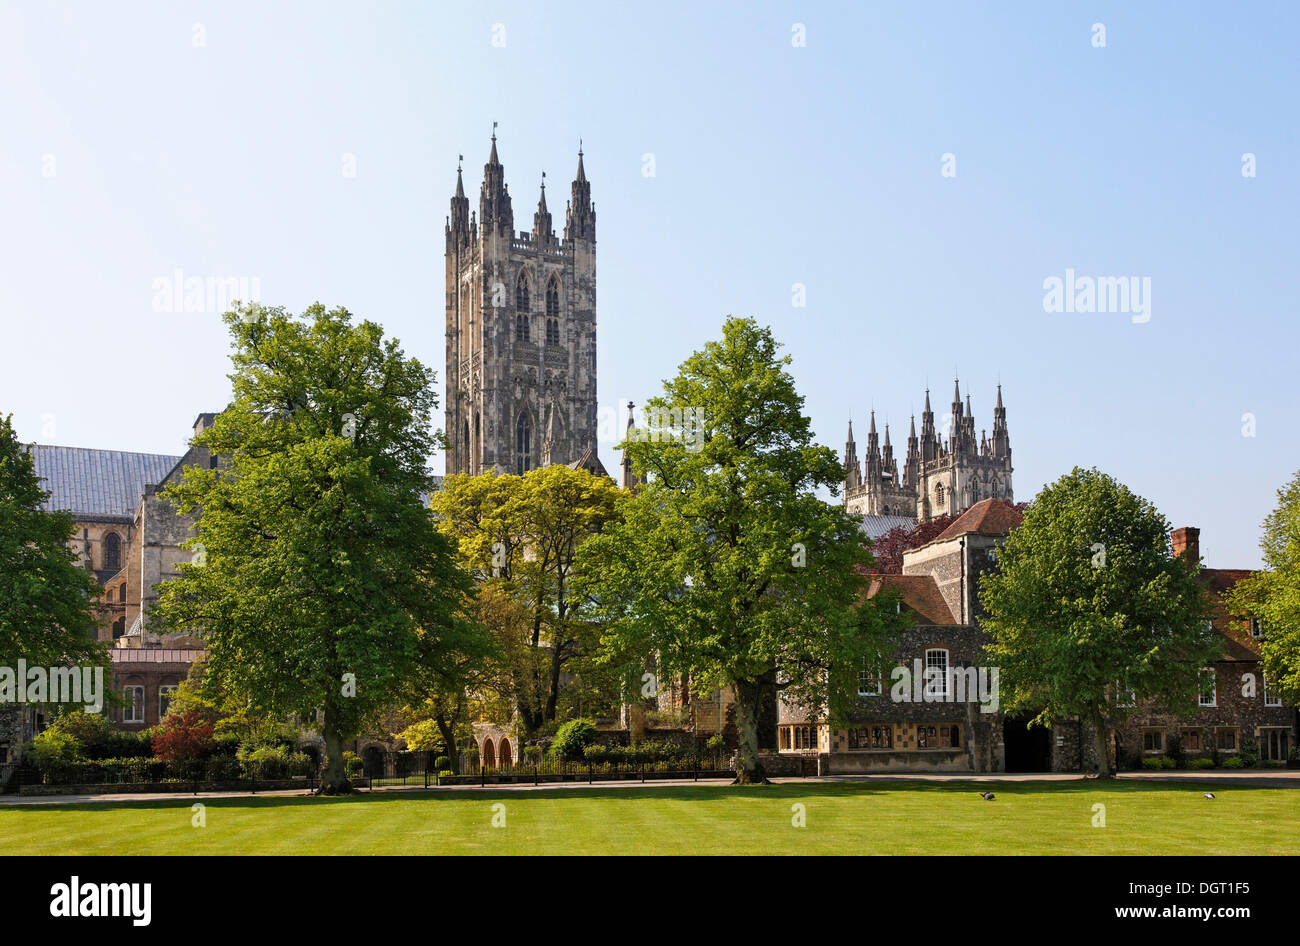 Die Kathedrale von Canterbury Kathedrale Green Park, South East England, administrative Grafschaft Kent, England, Vereinigtes Königreich, Europa Stockfoto